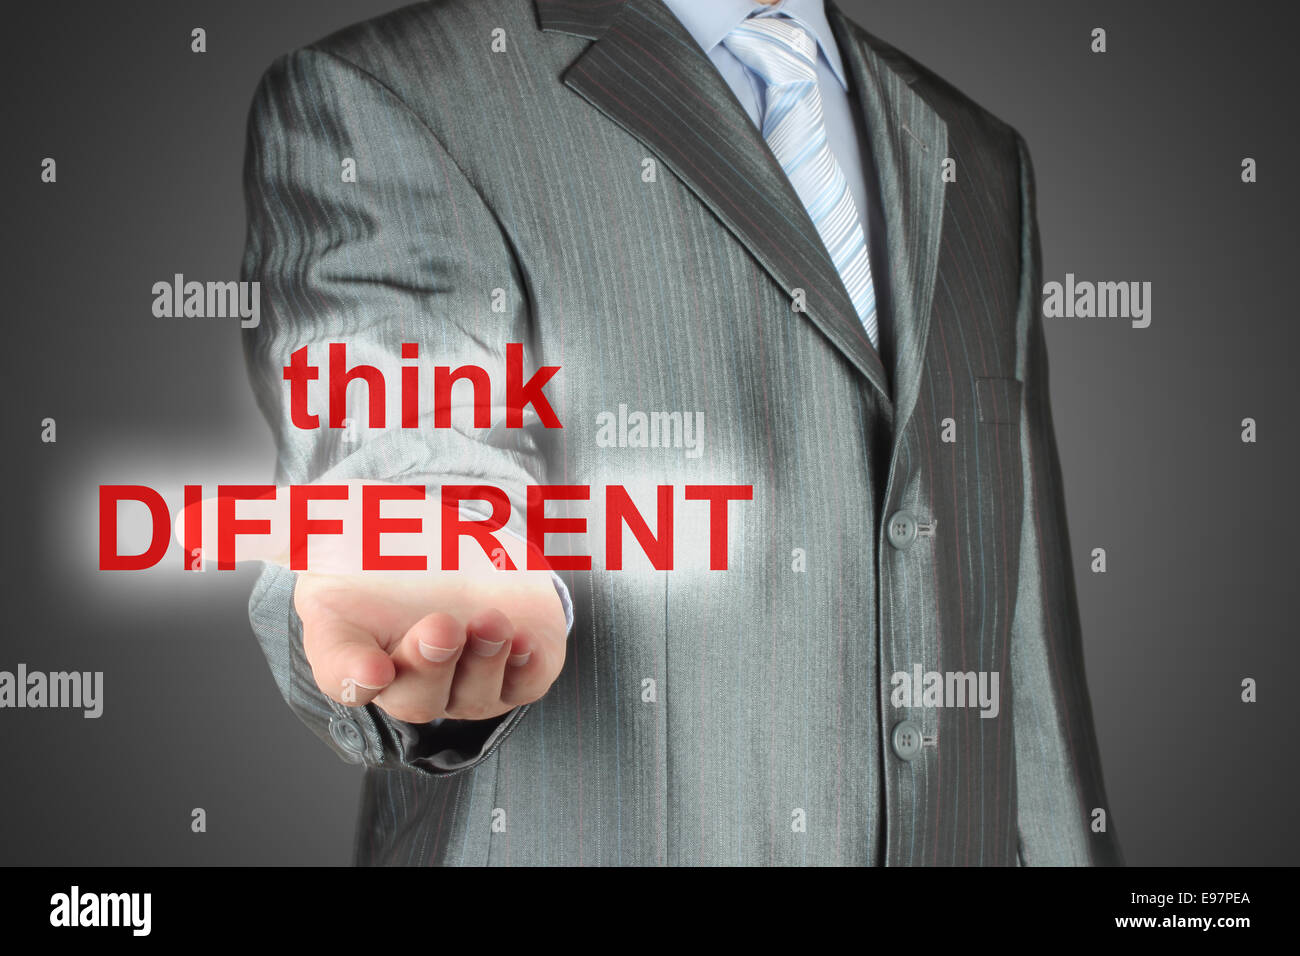 Mann hält virtuelle Worte "Think different" auf dunklem Hintergrund Stockfoto